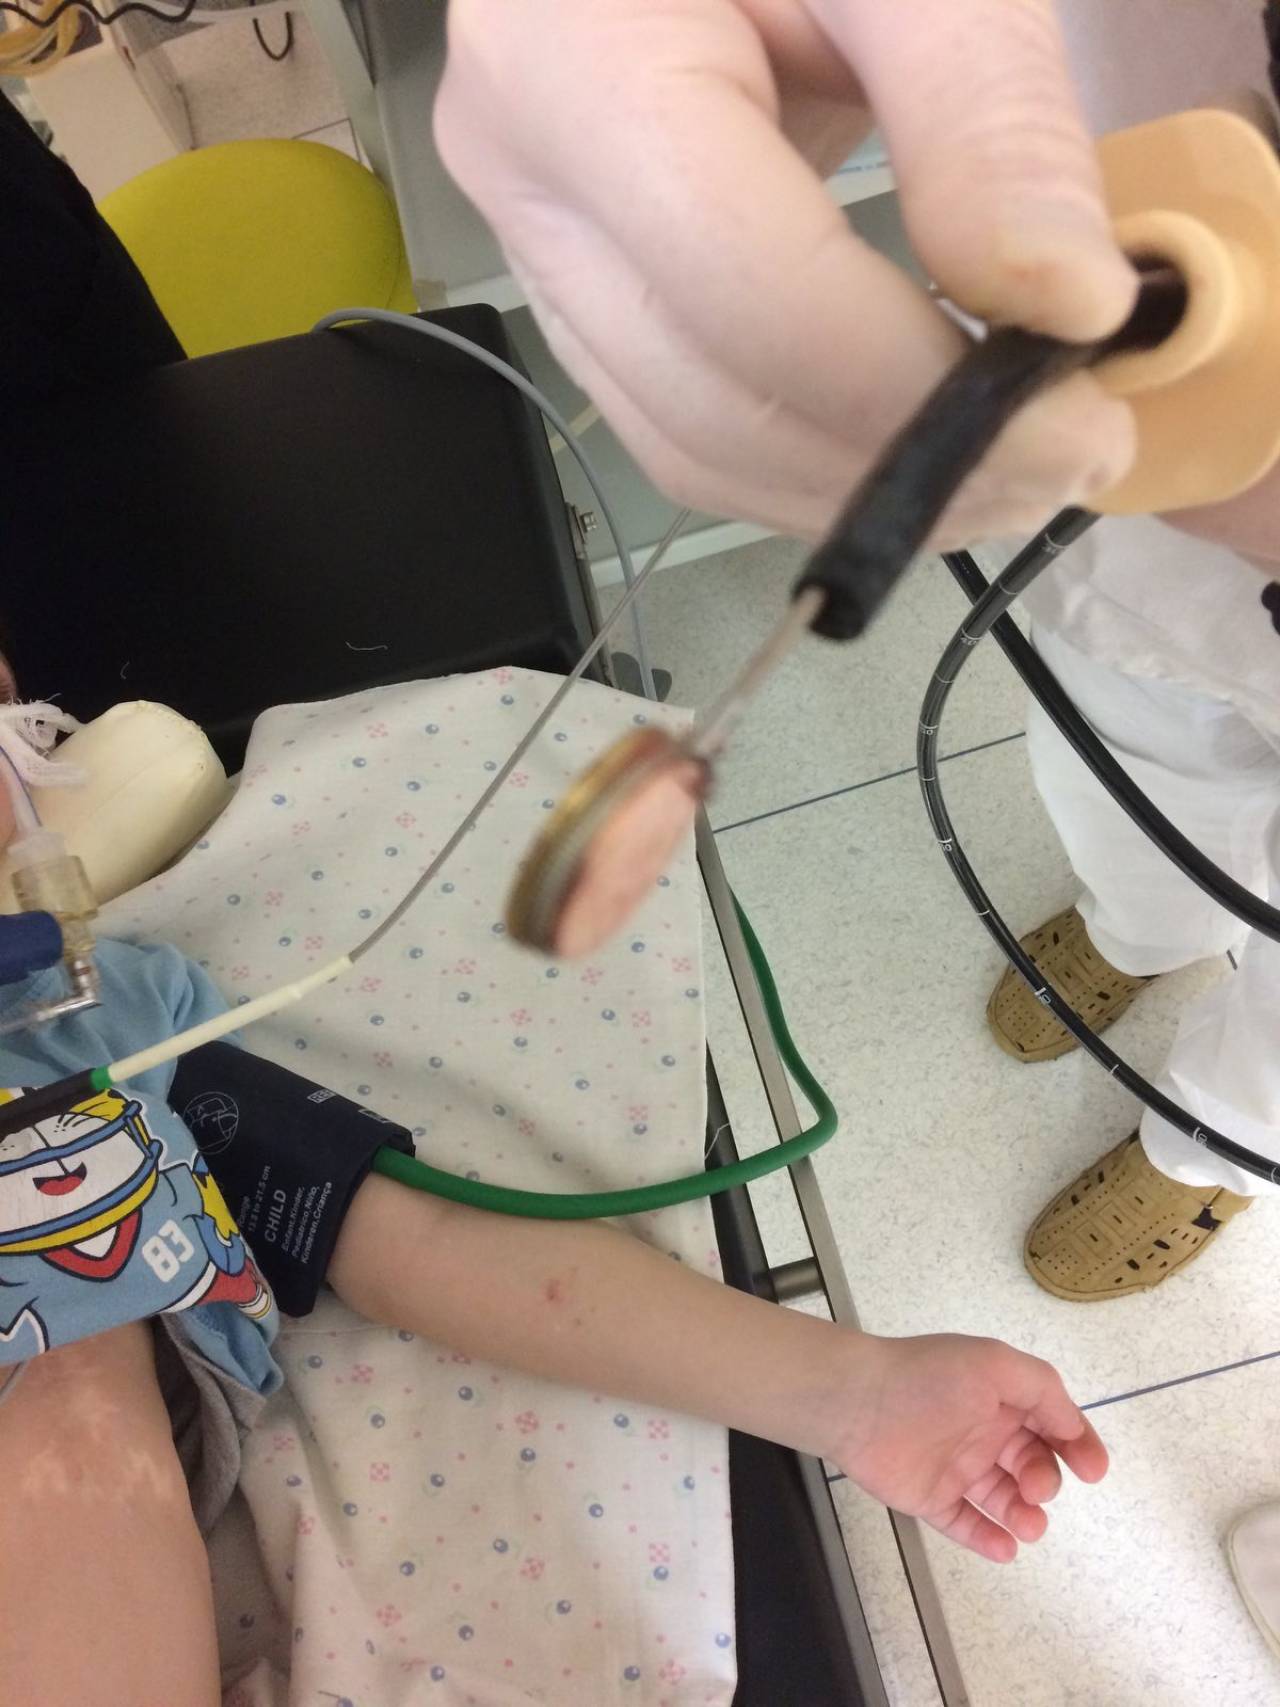 С начала года в Гродно уже три ребенка проглотили инородные предметы, понадобилась помощь медиков